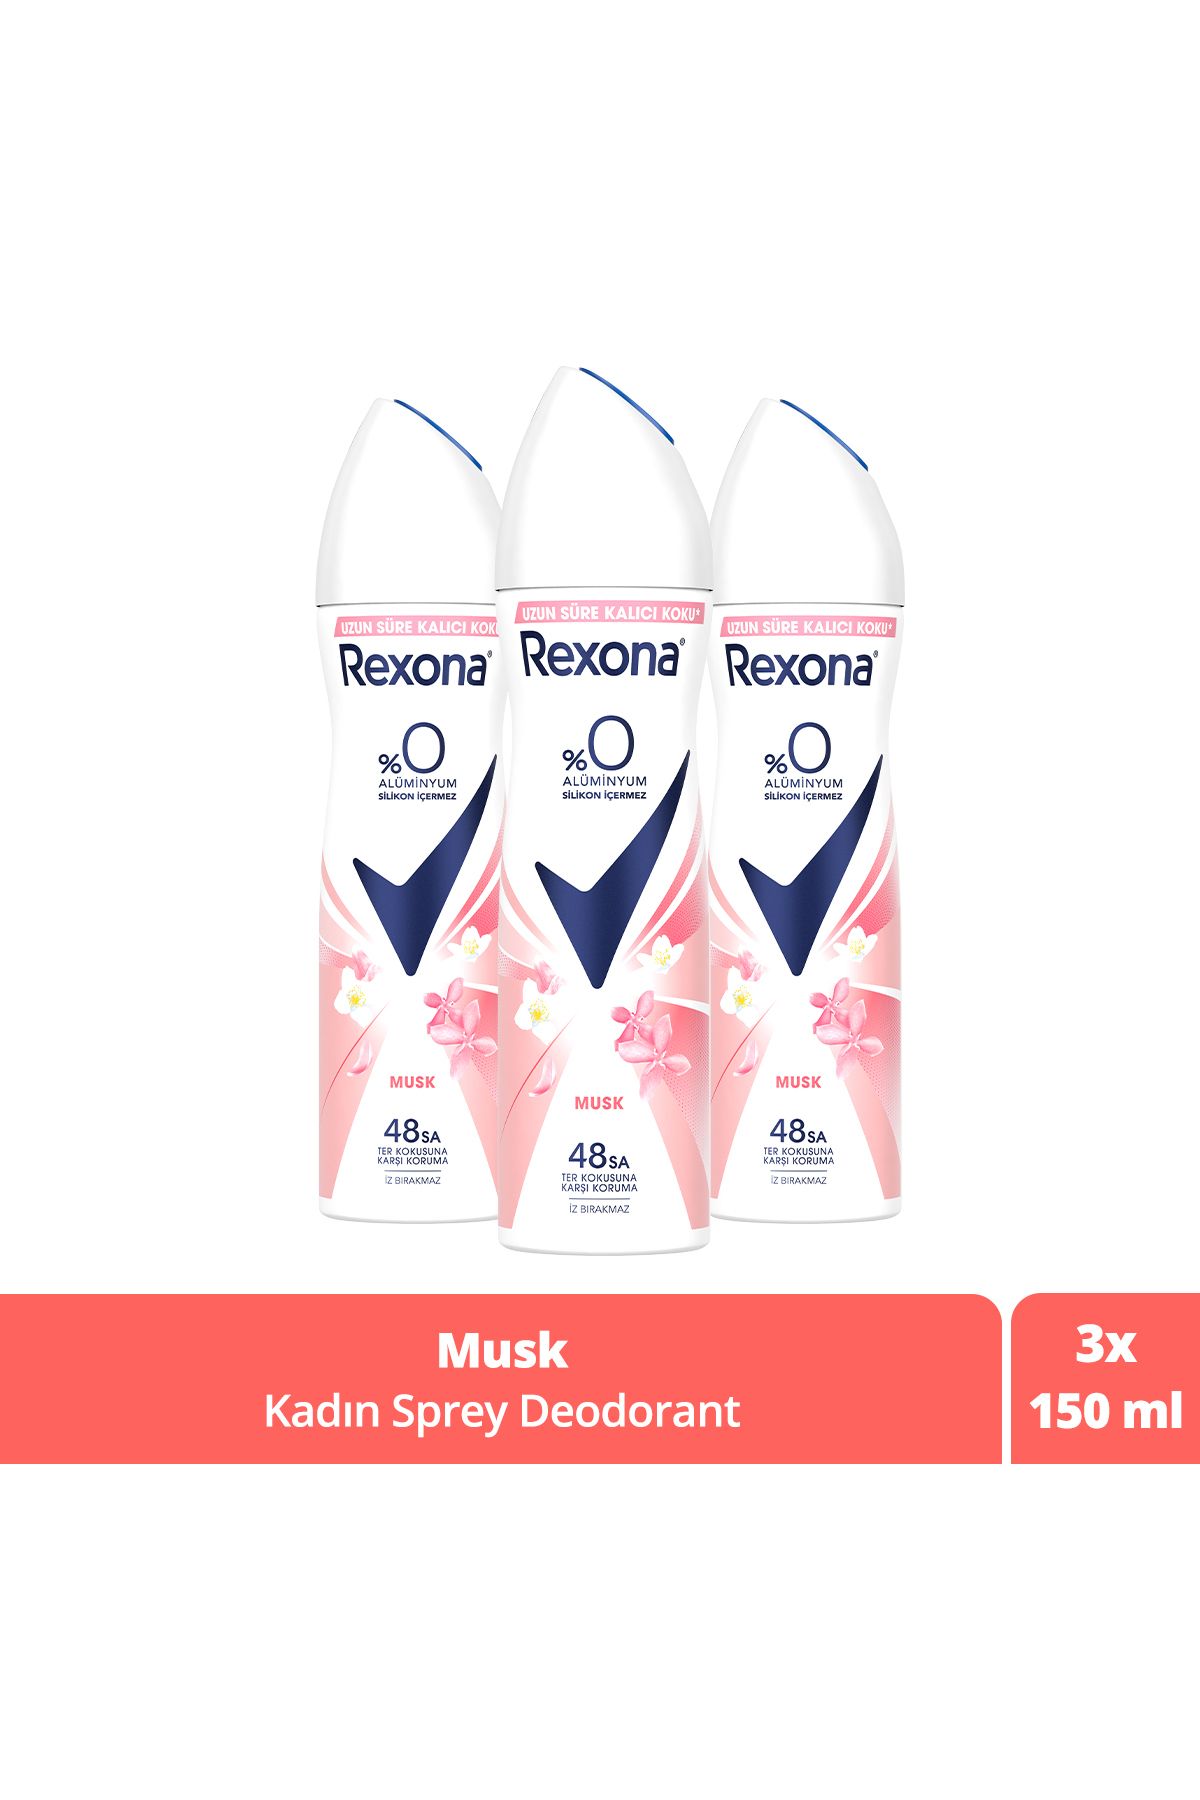 Rexona Kadın Sprey Deodorant Musk %0 Alüminyum 48 Saat Ter Kokusuna Karşı Koruma 150 Ml X3